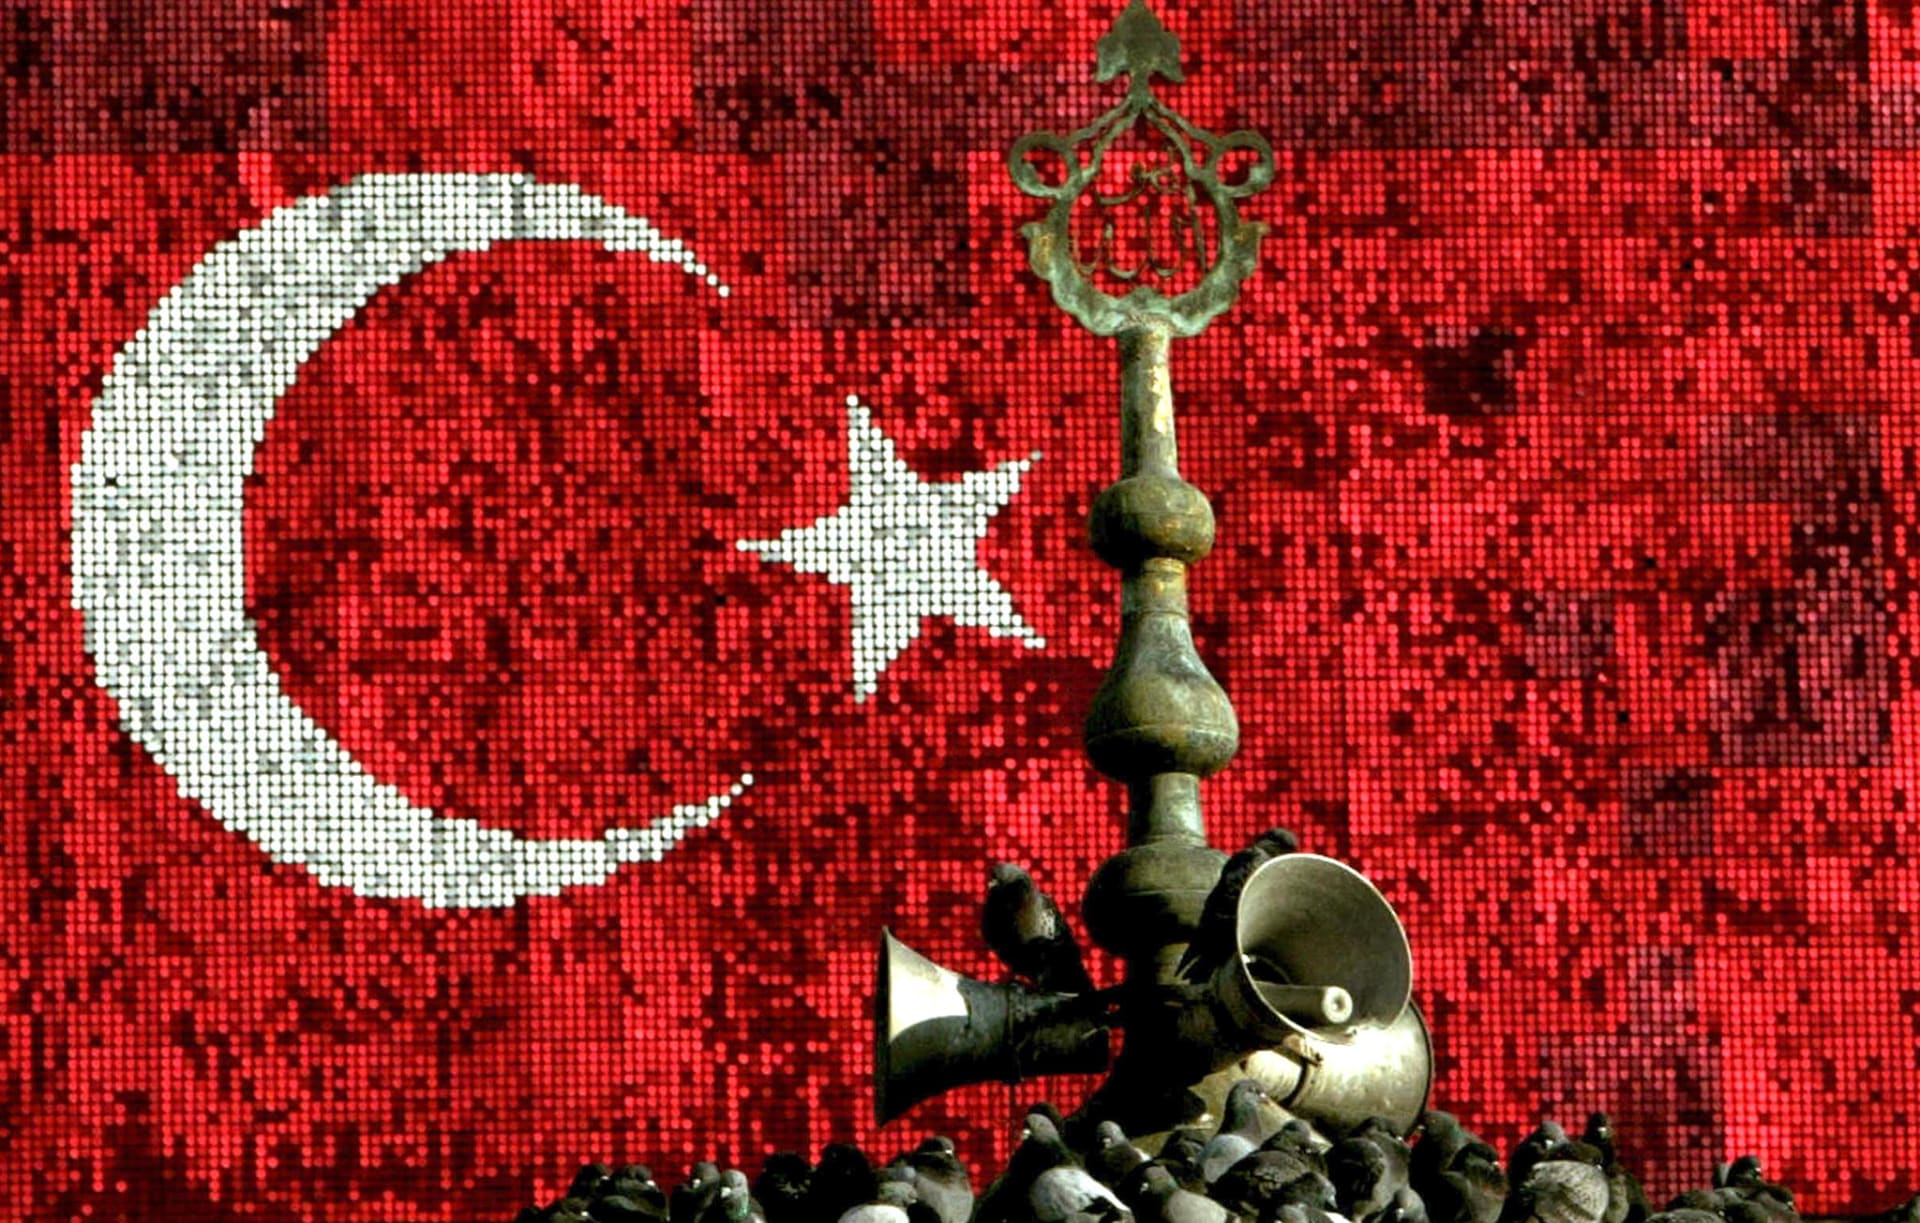 تركيا توضح حقيقة بث أغنية "بيلا تشاو" في مساجد إزمير بدل الأذان